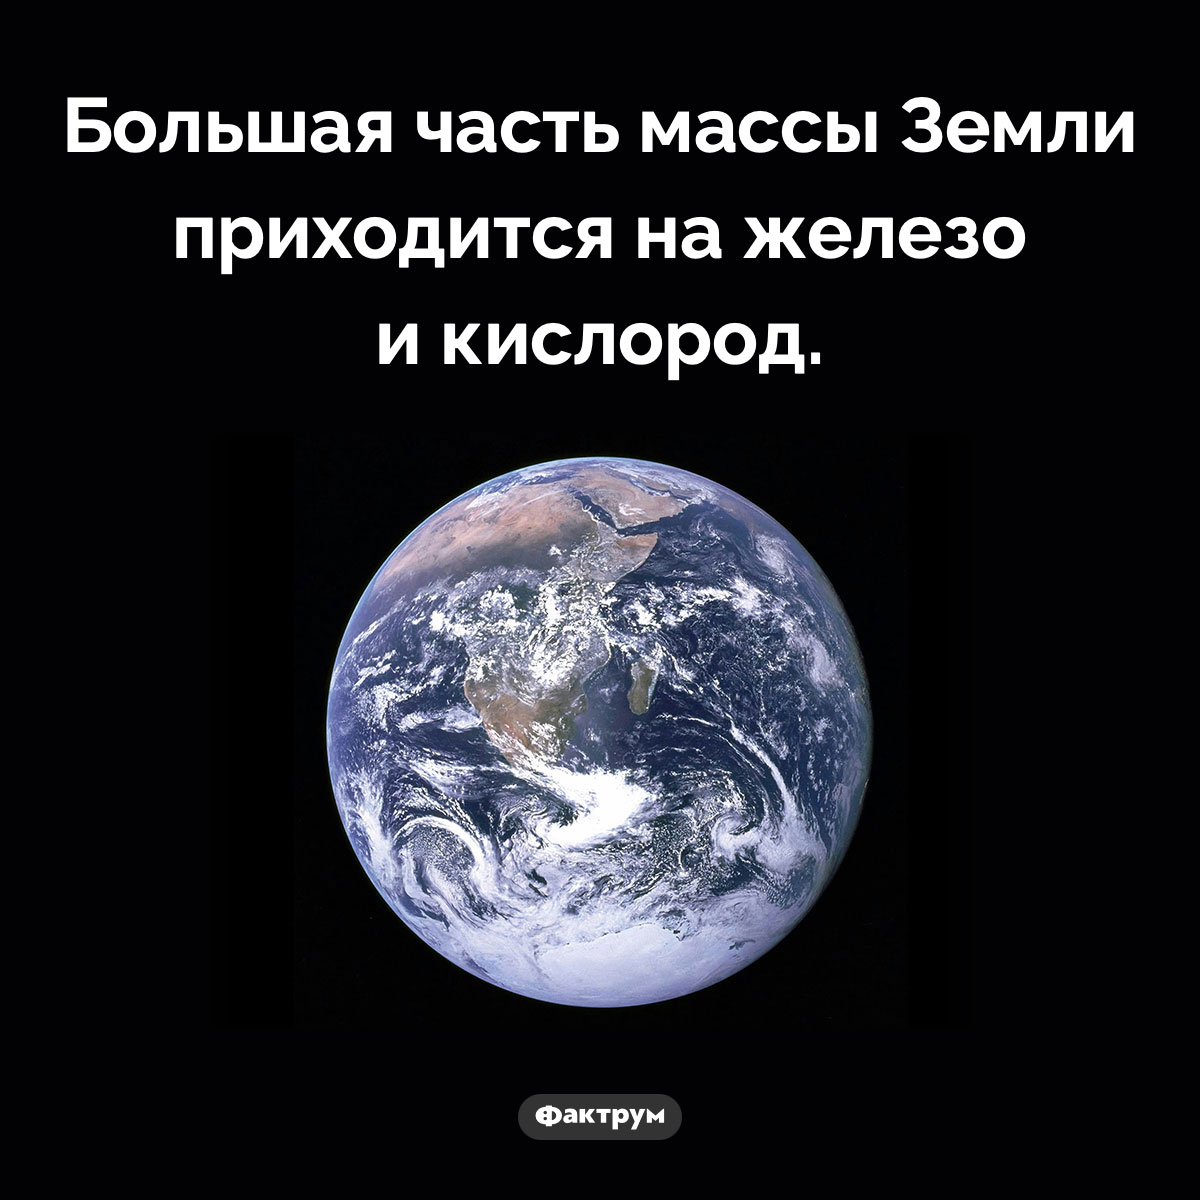 Из чего, в основном, состоит Земля. Большая часть массы Земли приходится на железо и кислород.